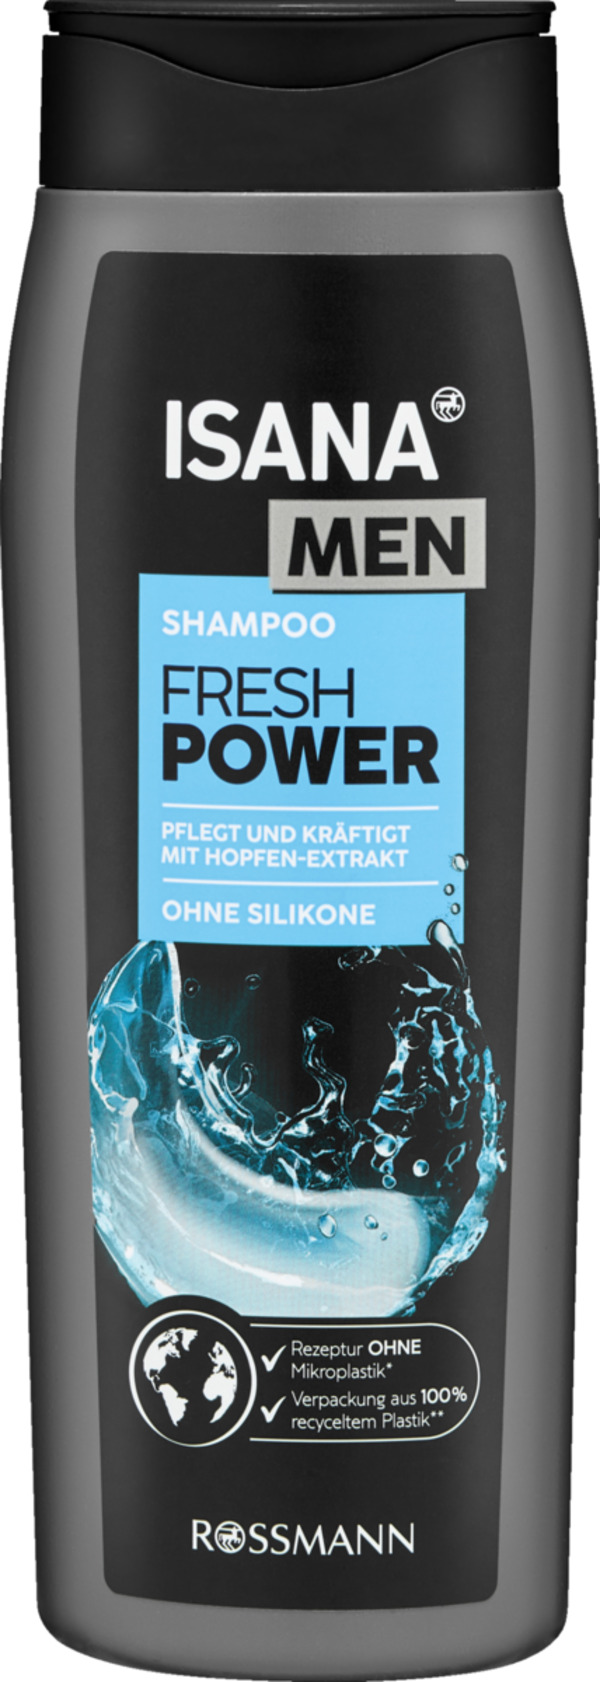 Bild 1 von ISANA MEN Shampoo extra Power 1.83 EUR/1 l